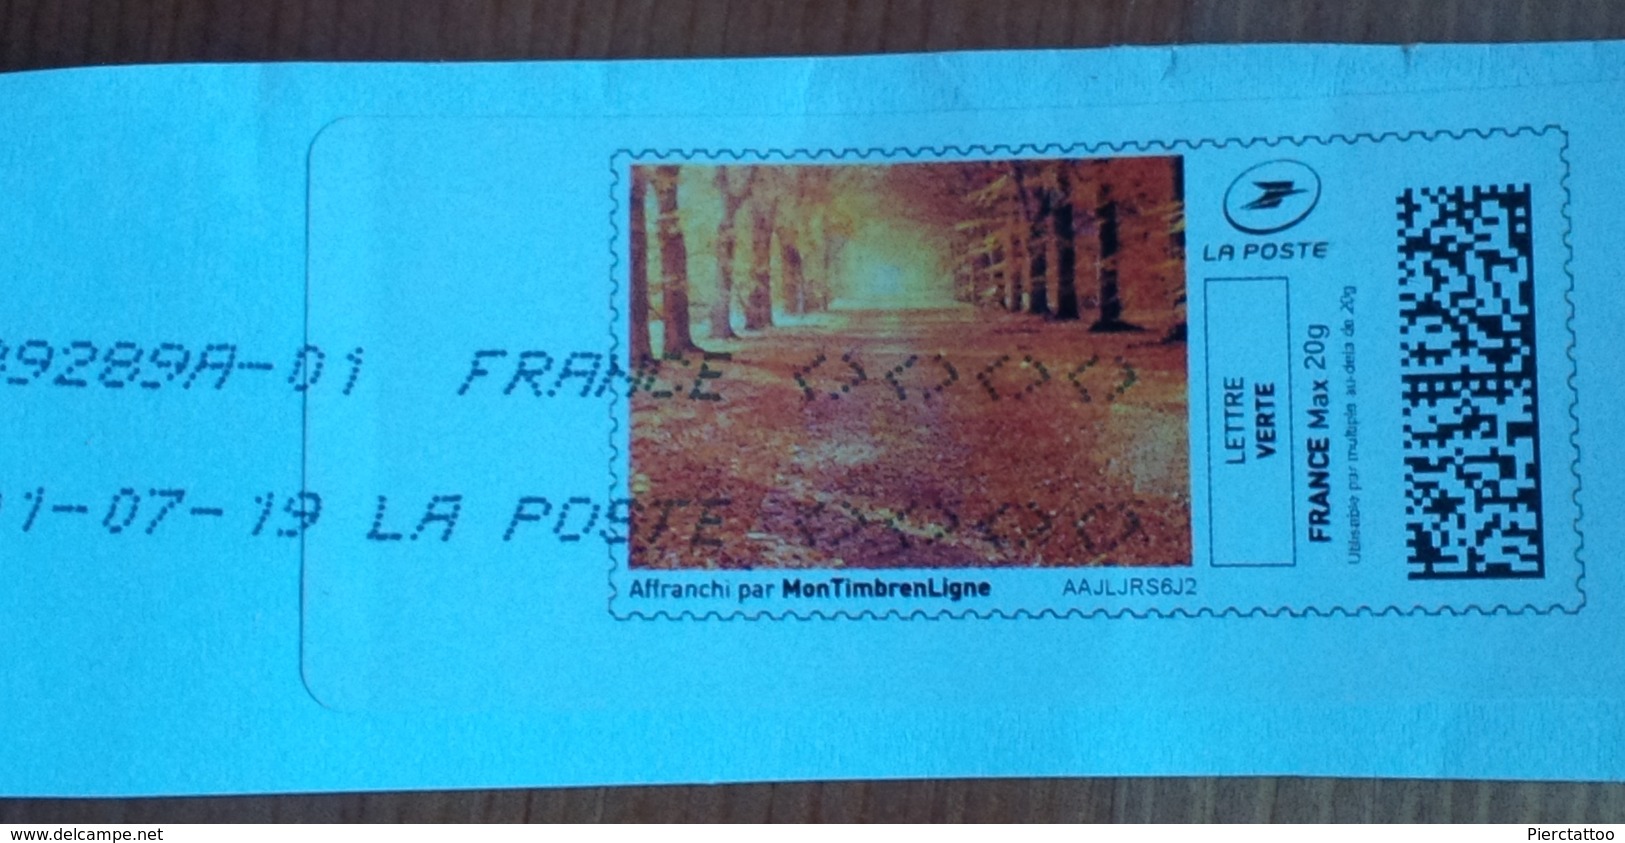 Timbre En Ligne "Paysage D'automne " (Lettre Verte) - France - Timbres à Imprimer (Montimbrenligne)